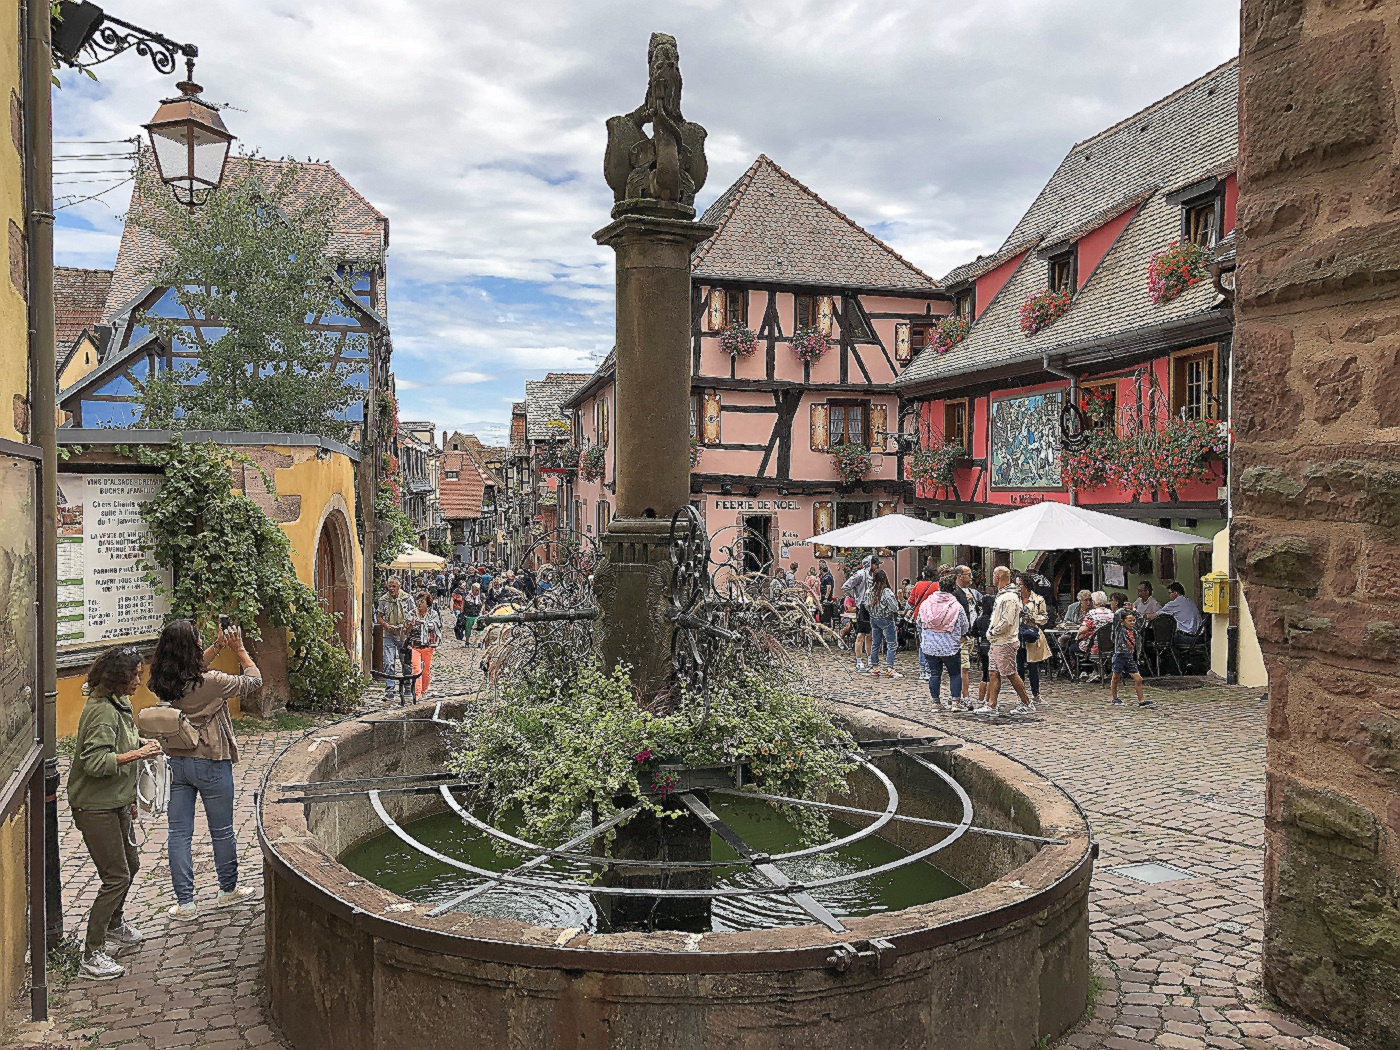 Das elsässische Städtchen Riquewihr mit seiner mittelalterlichen Altstadt (Fotos: H. - J. Strack)